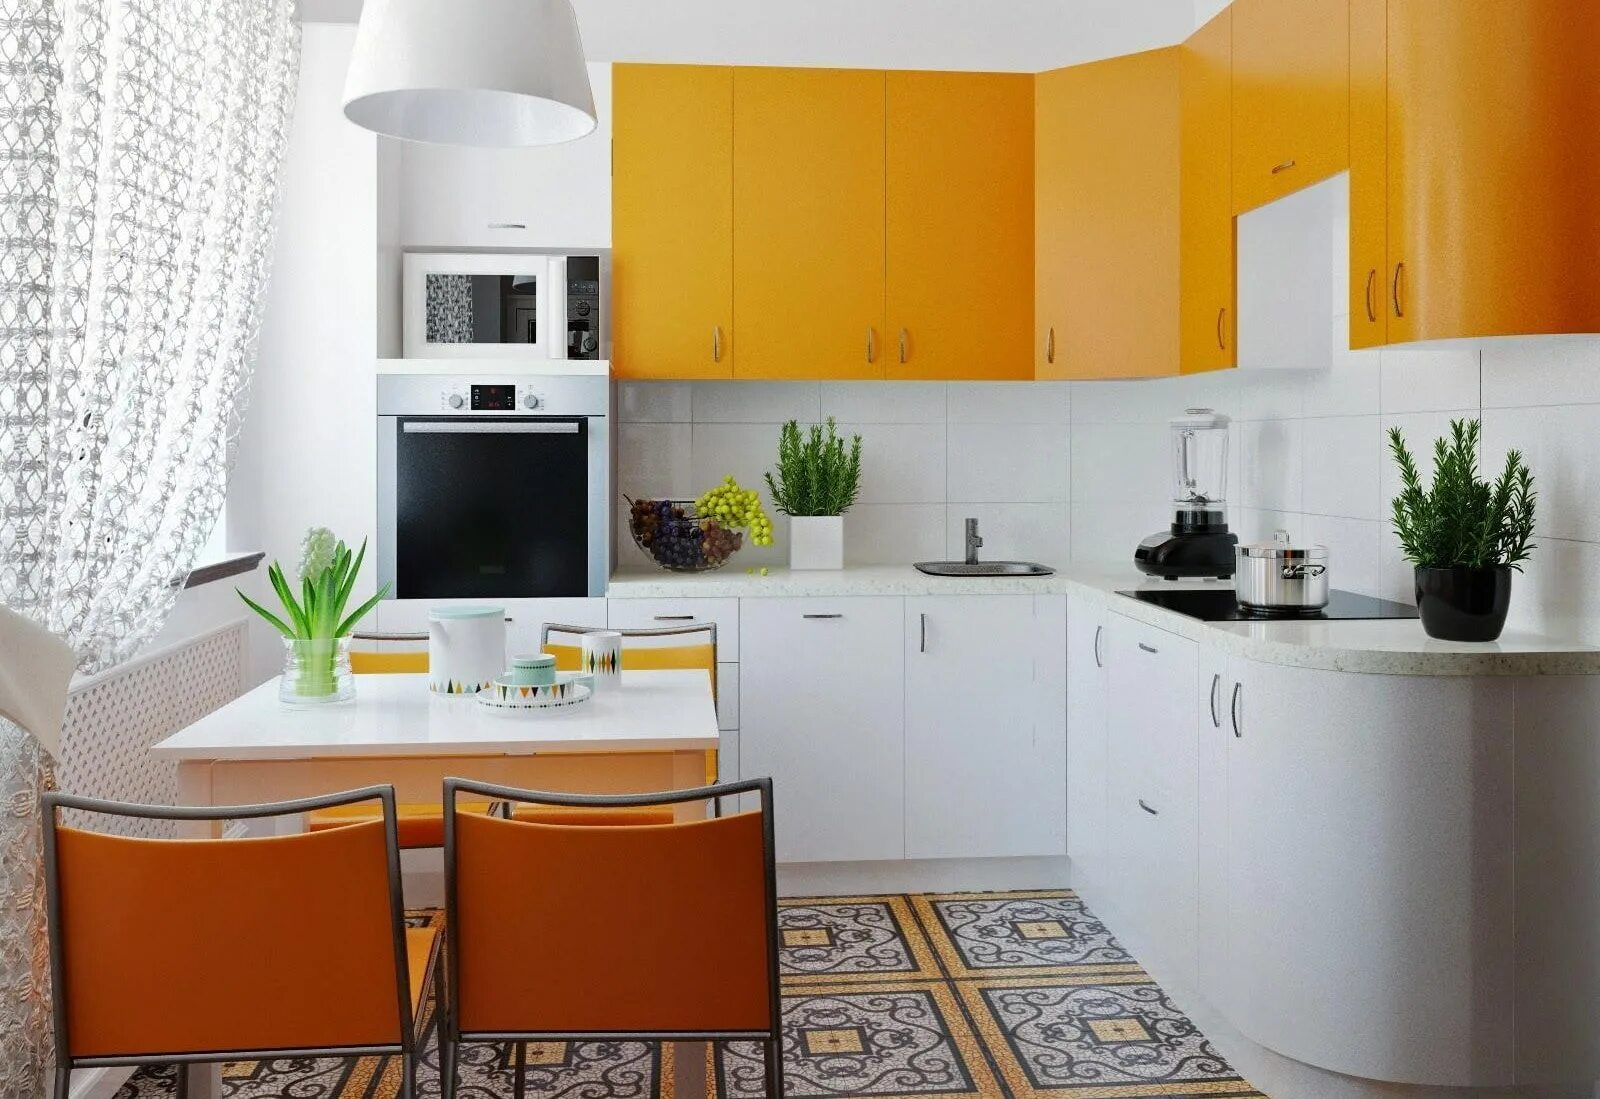 Хорошая простая кухня. Оранжевая кухня в интерьере. Красивые яркие кухни небольшие. Интерьер маленькой кухни. Красивые маленькие кухни.